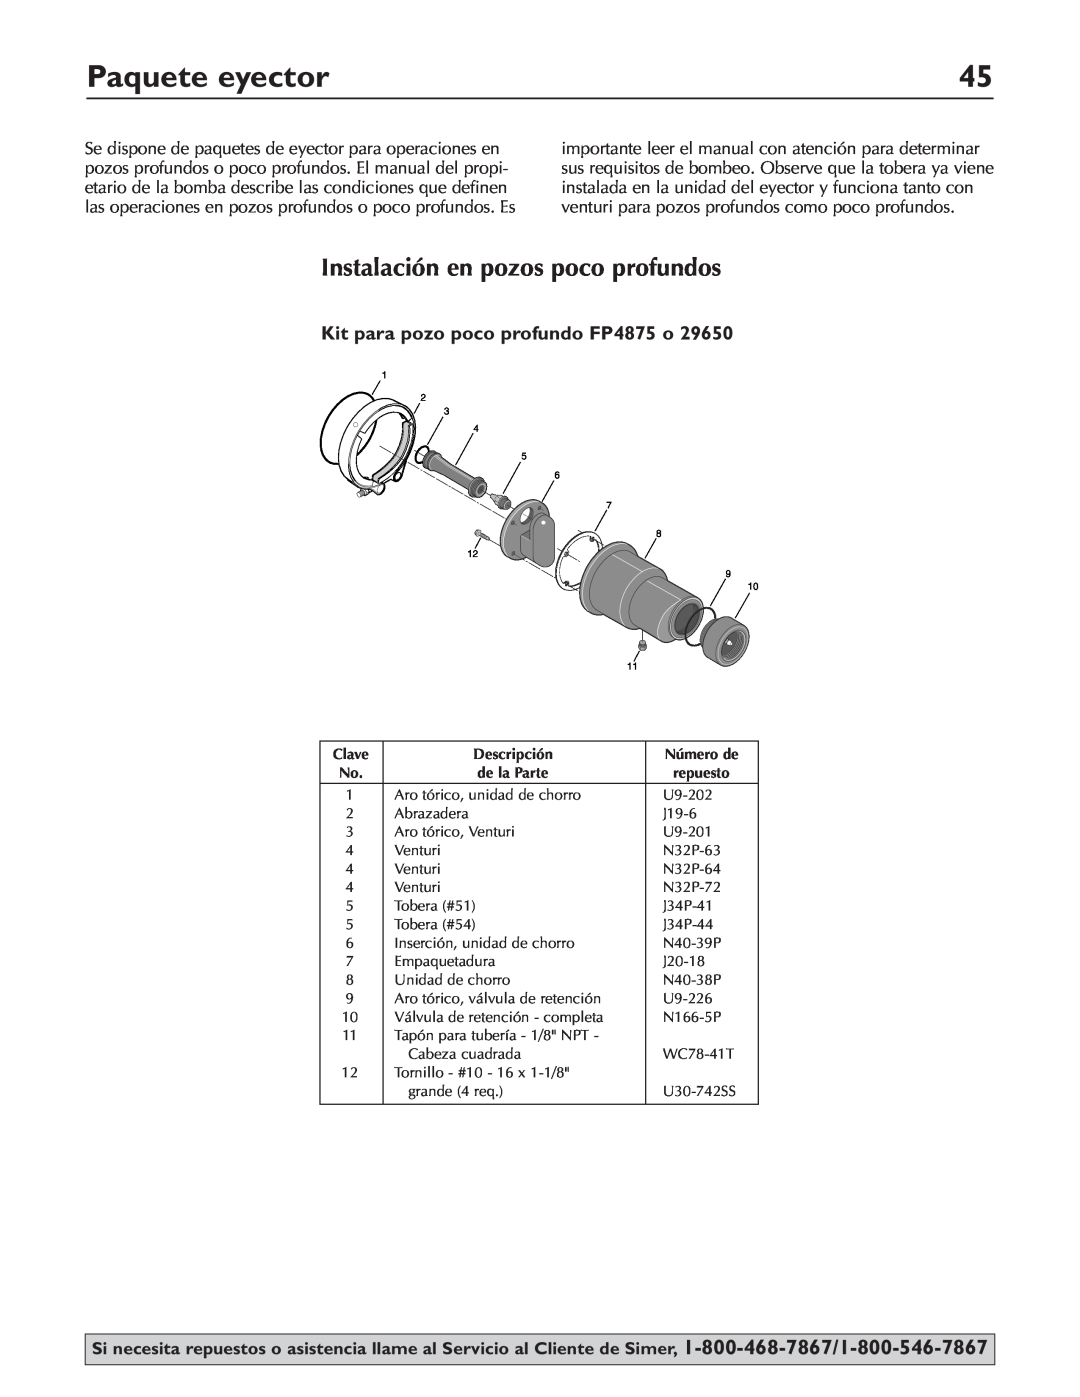 Simer Pumps 3310P Paquete eyector, Instalación en pozos poco profundos, Kit para pozo poco profundo FP4875 o, Descripción 